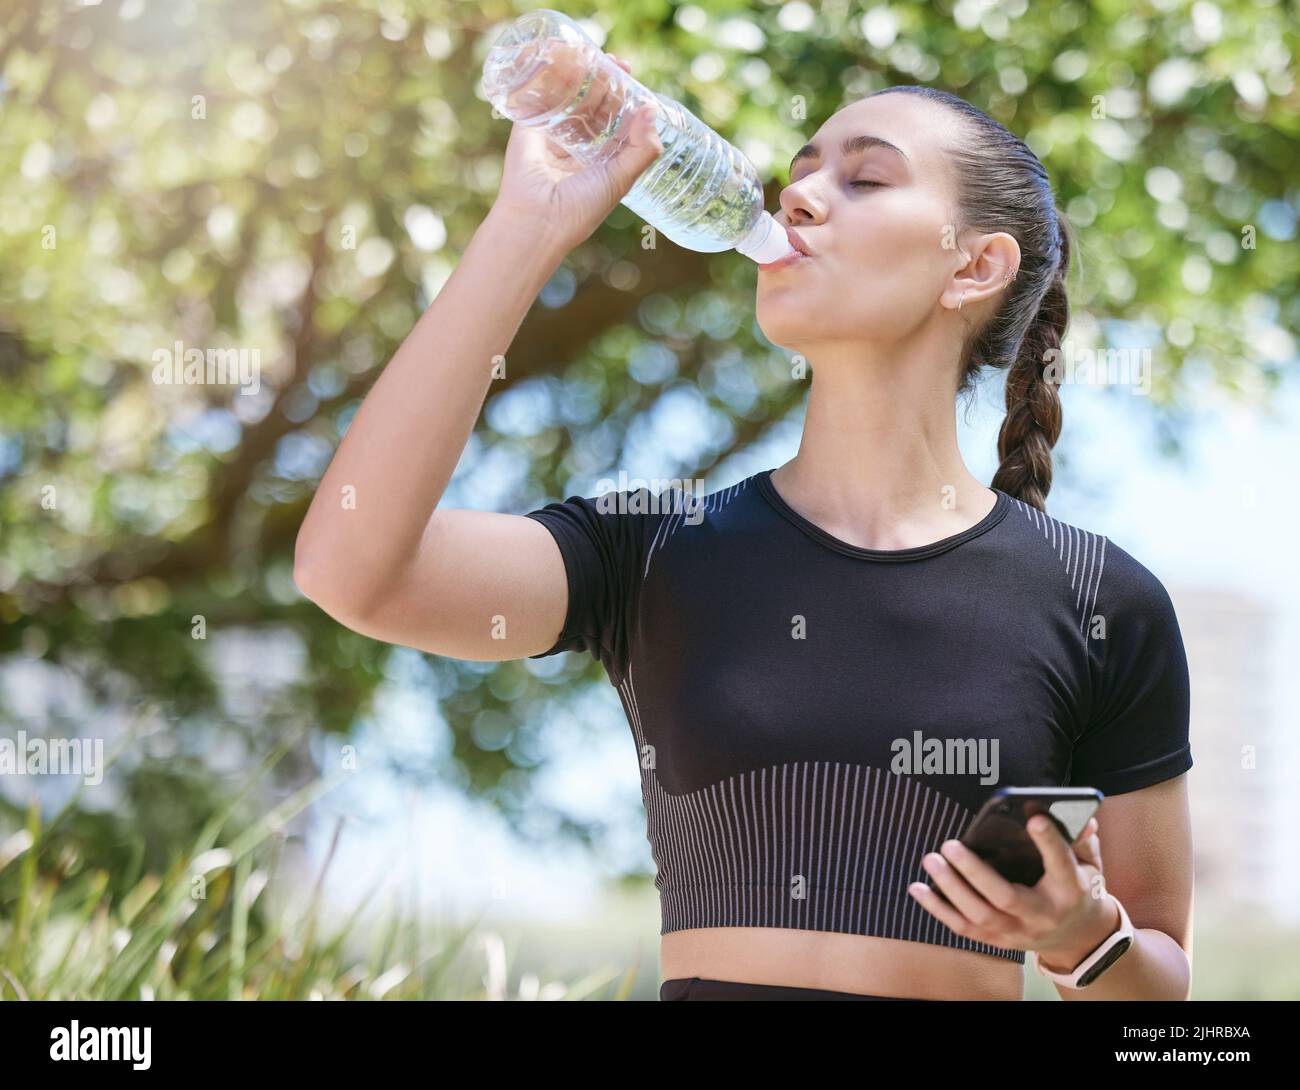 Jeune athlète féminine prenant une pause et de l'eau potable à partir d'une bouteille et tenant un smartphone pendant une course et s'exerçant à l'extérieur pendant la journée Banque D'Images